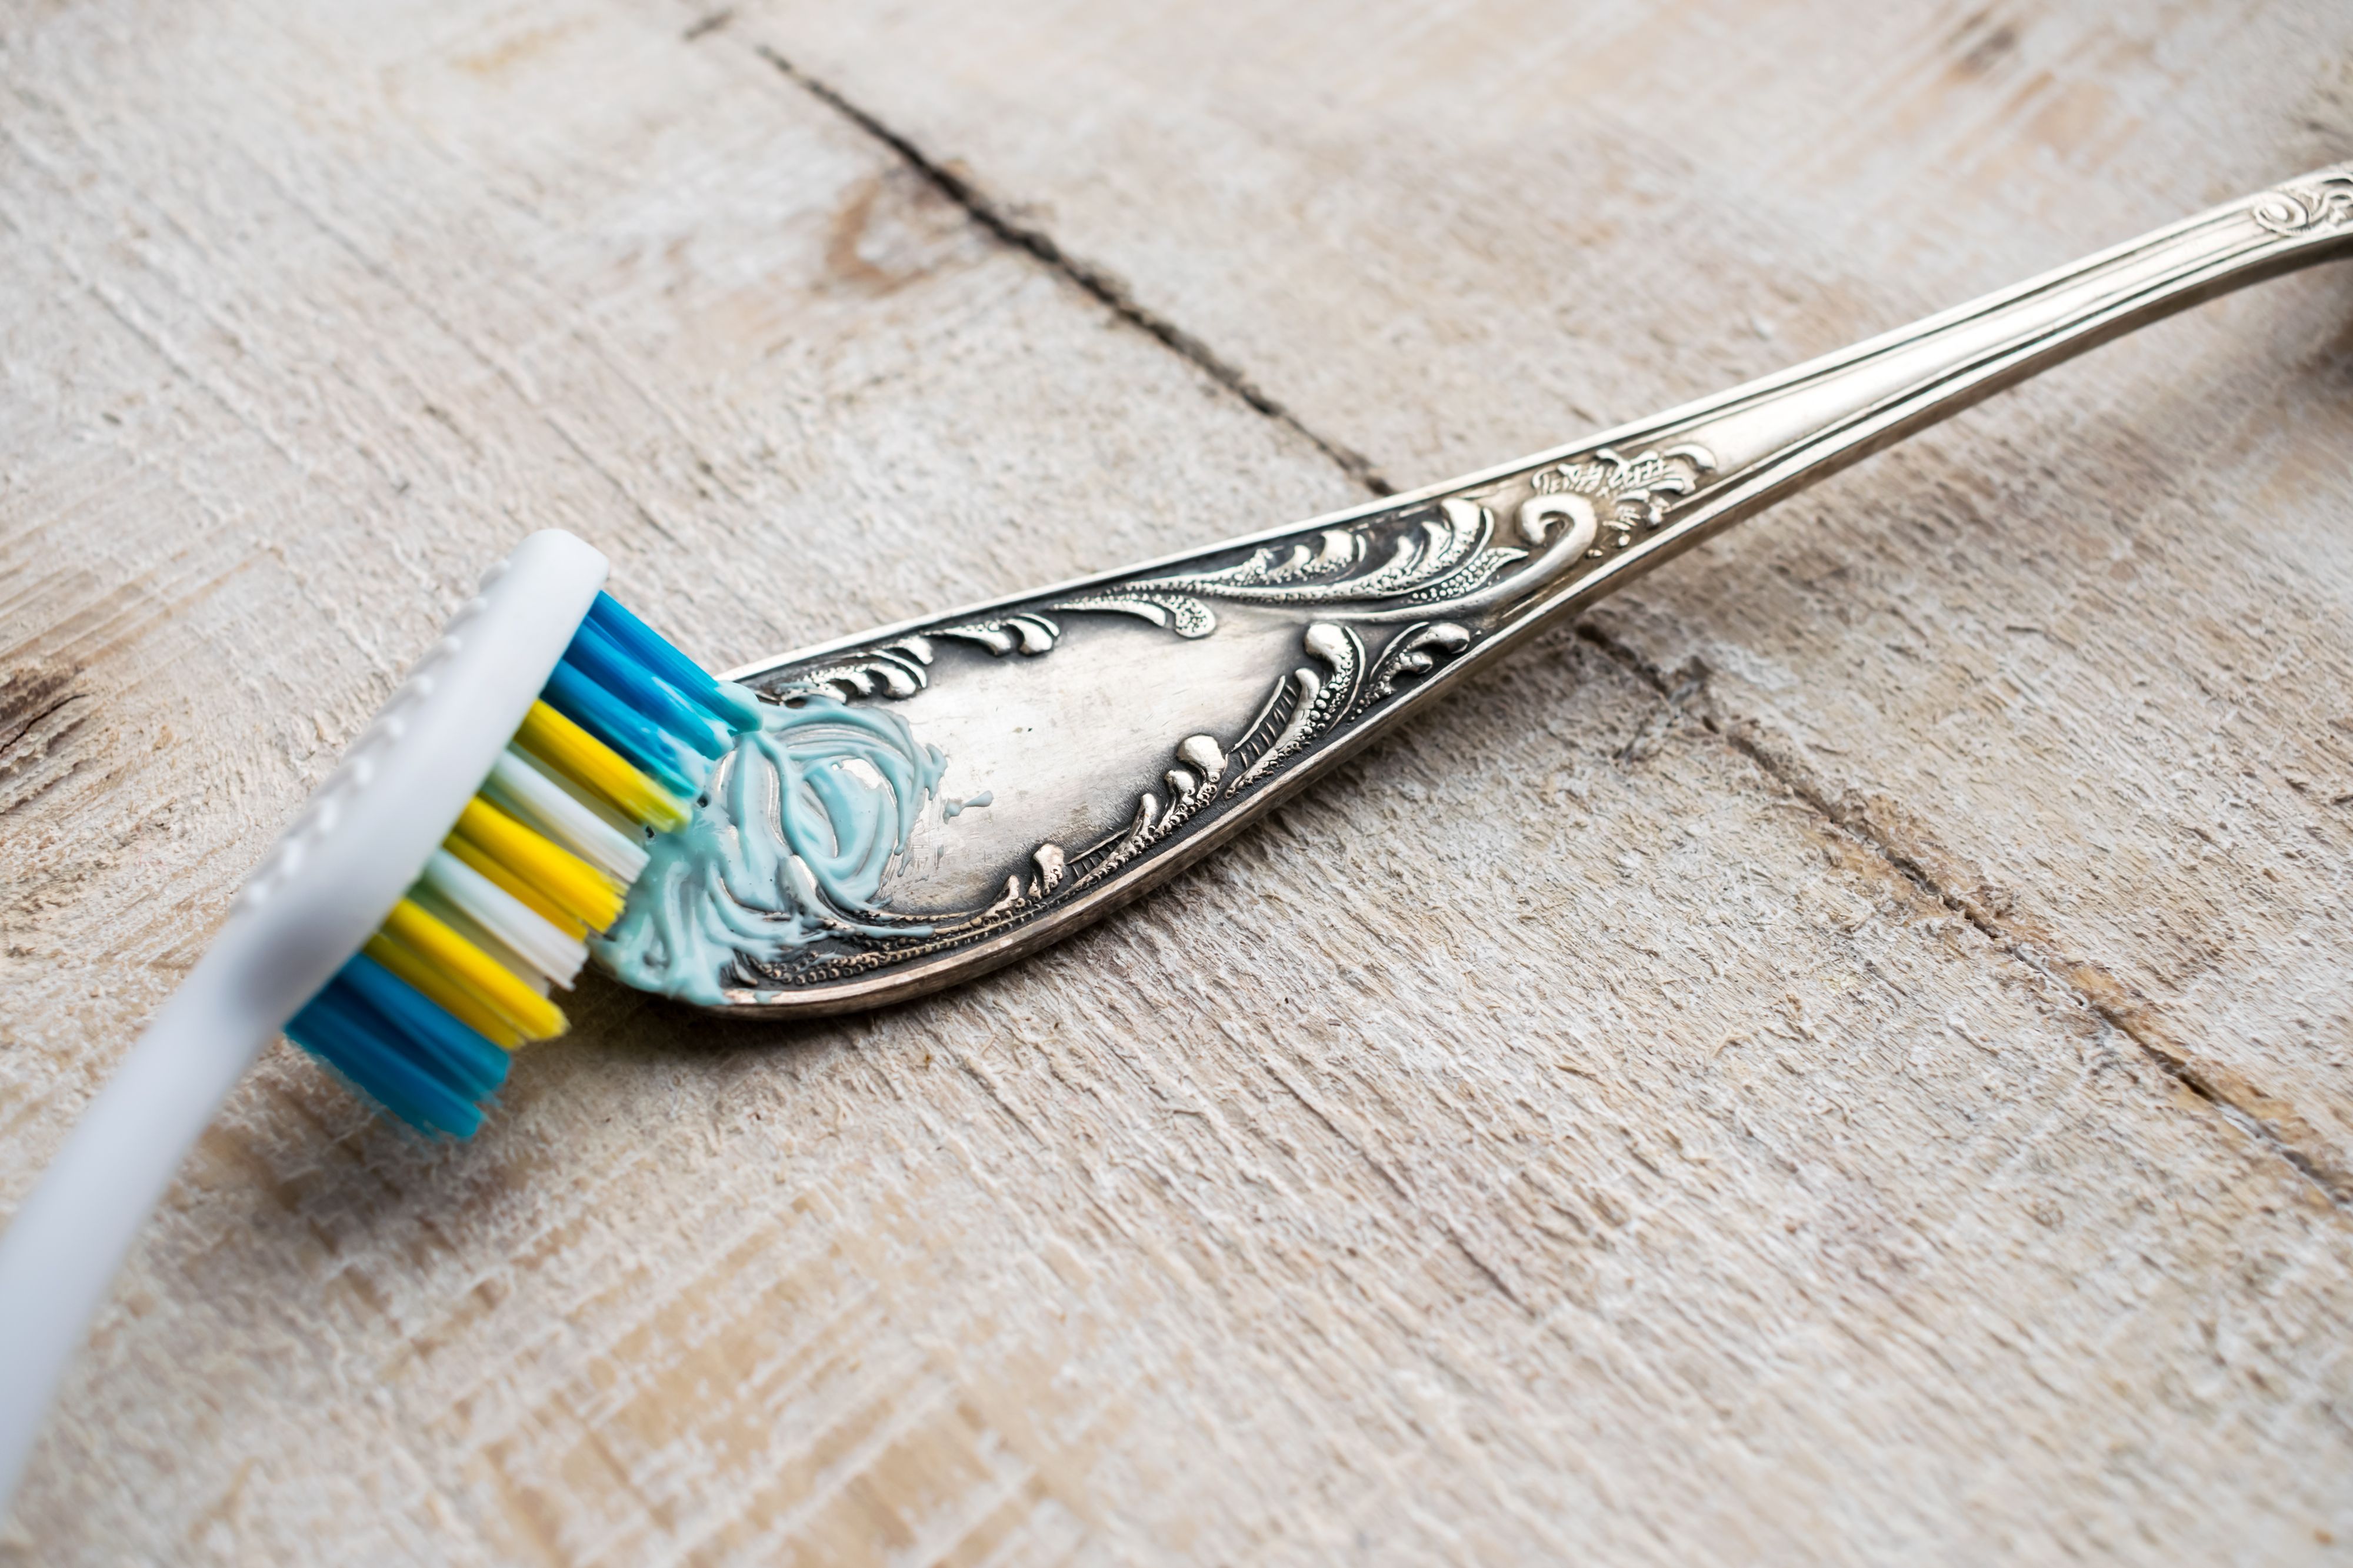 Silberbesteck reinigen mit Zahnpasta